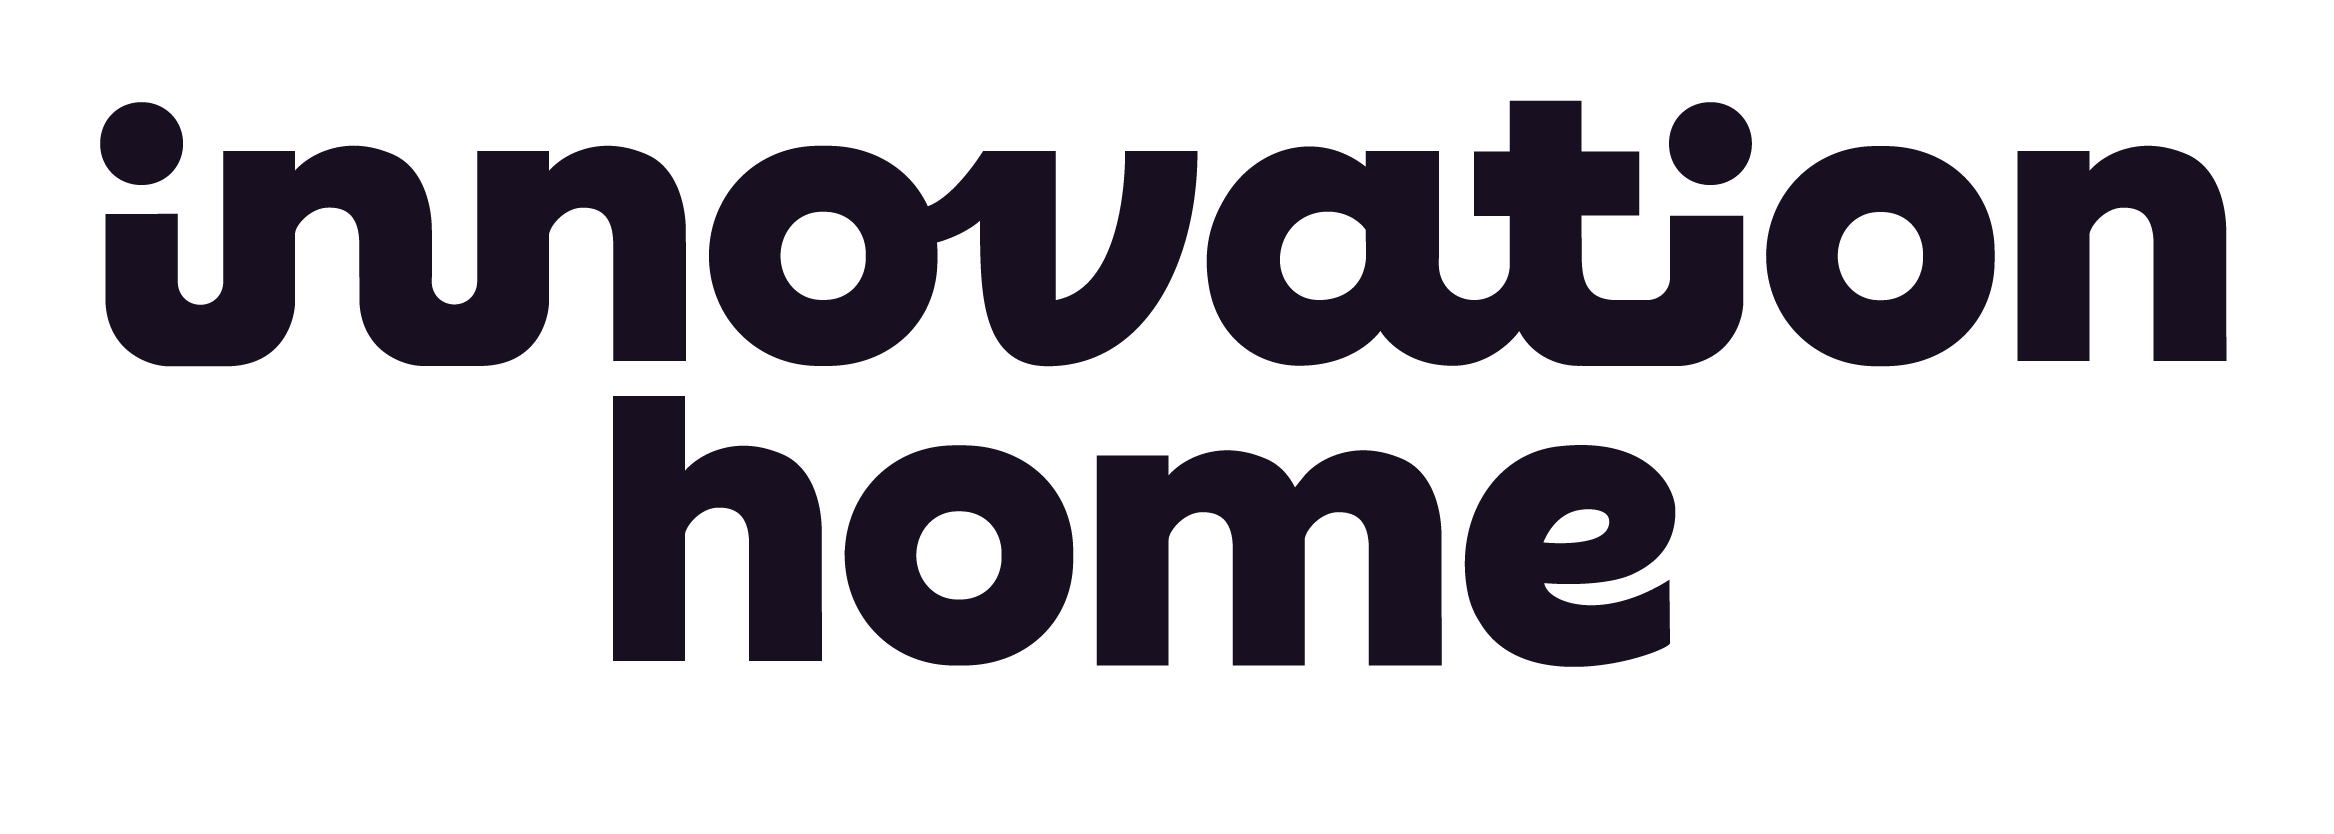 Innovation Home